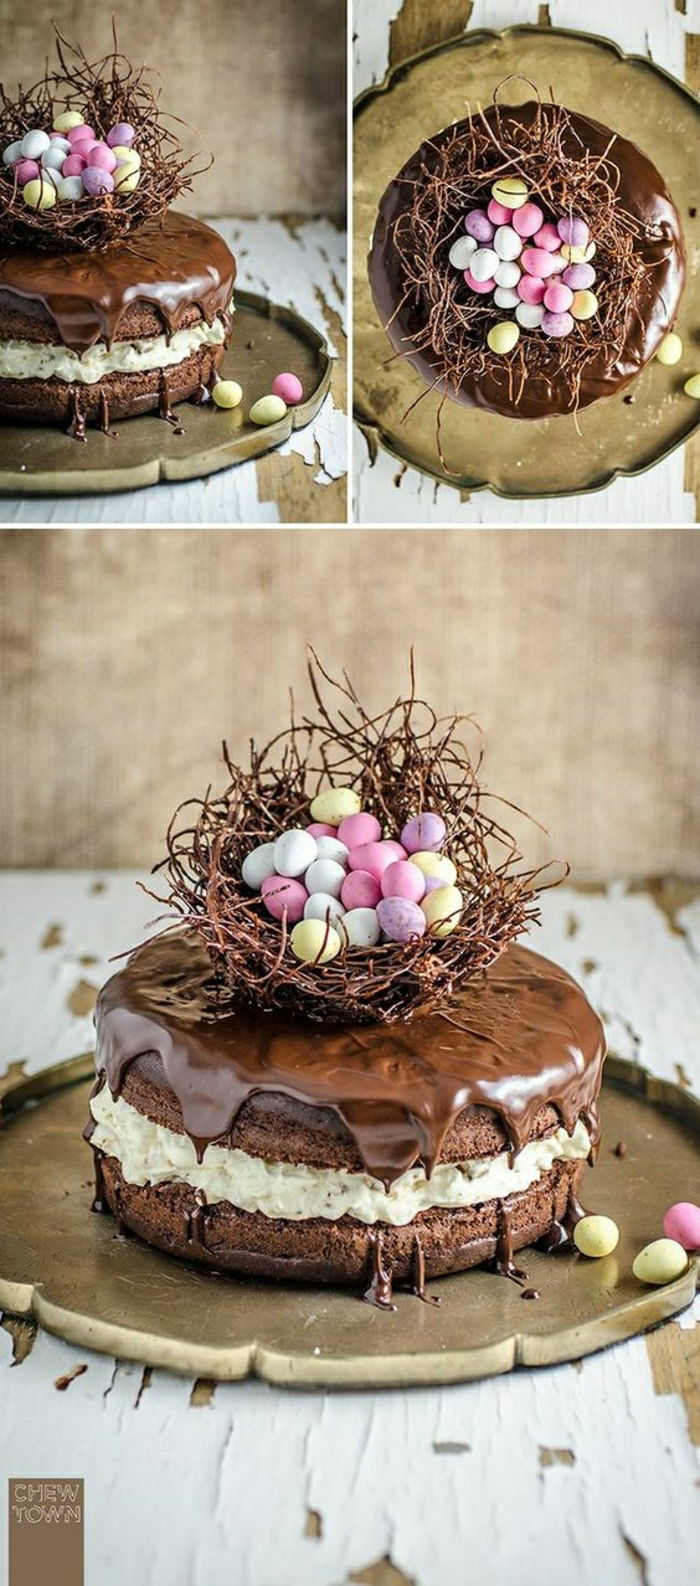 Sjokoladekake med påskmotiv Påskekurv med små, fargerike egg